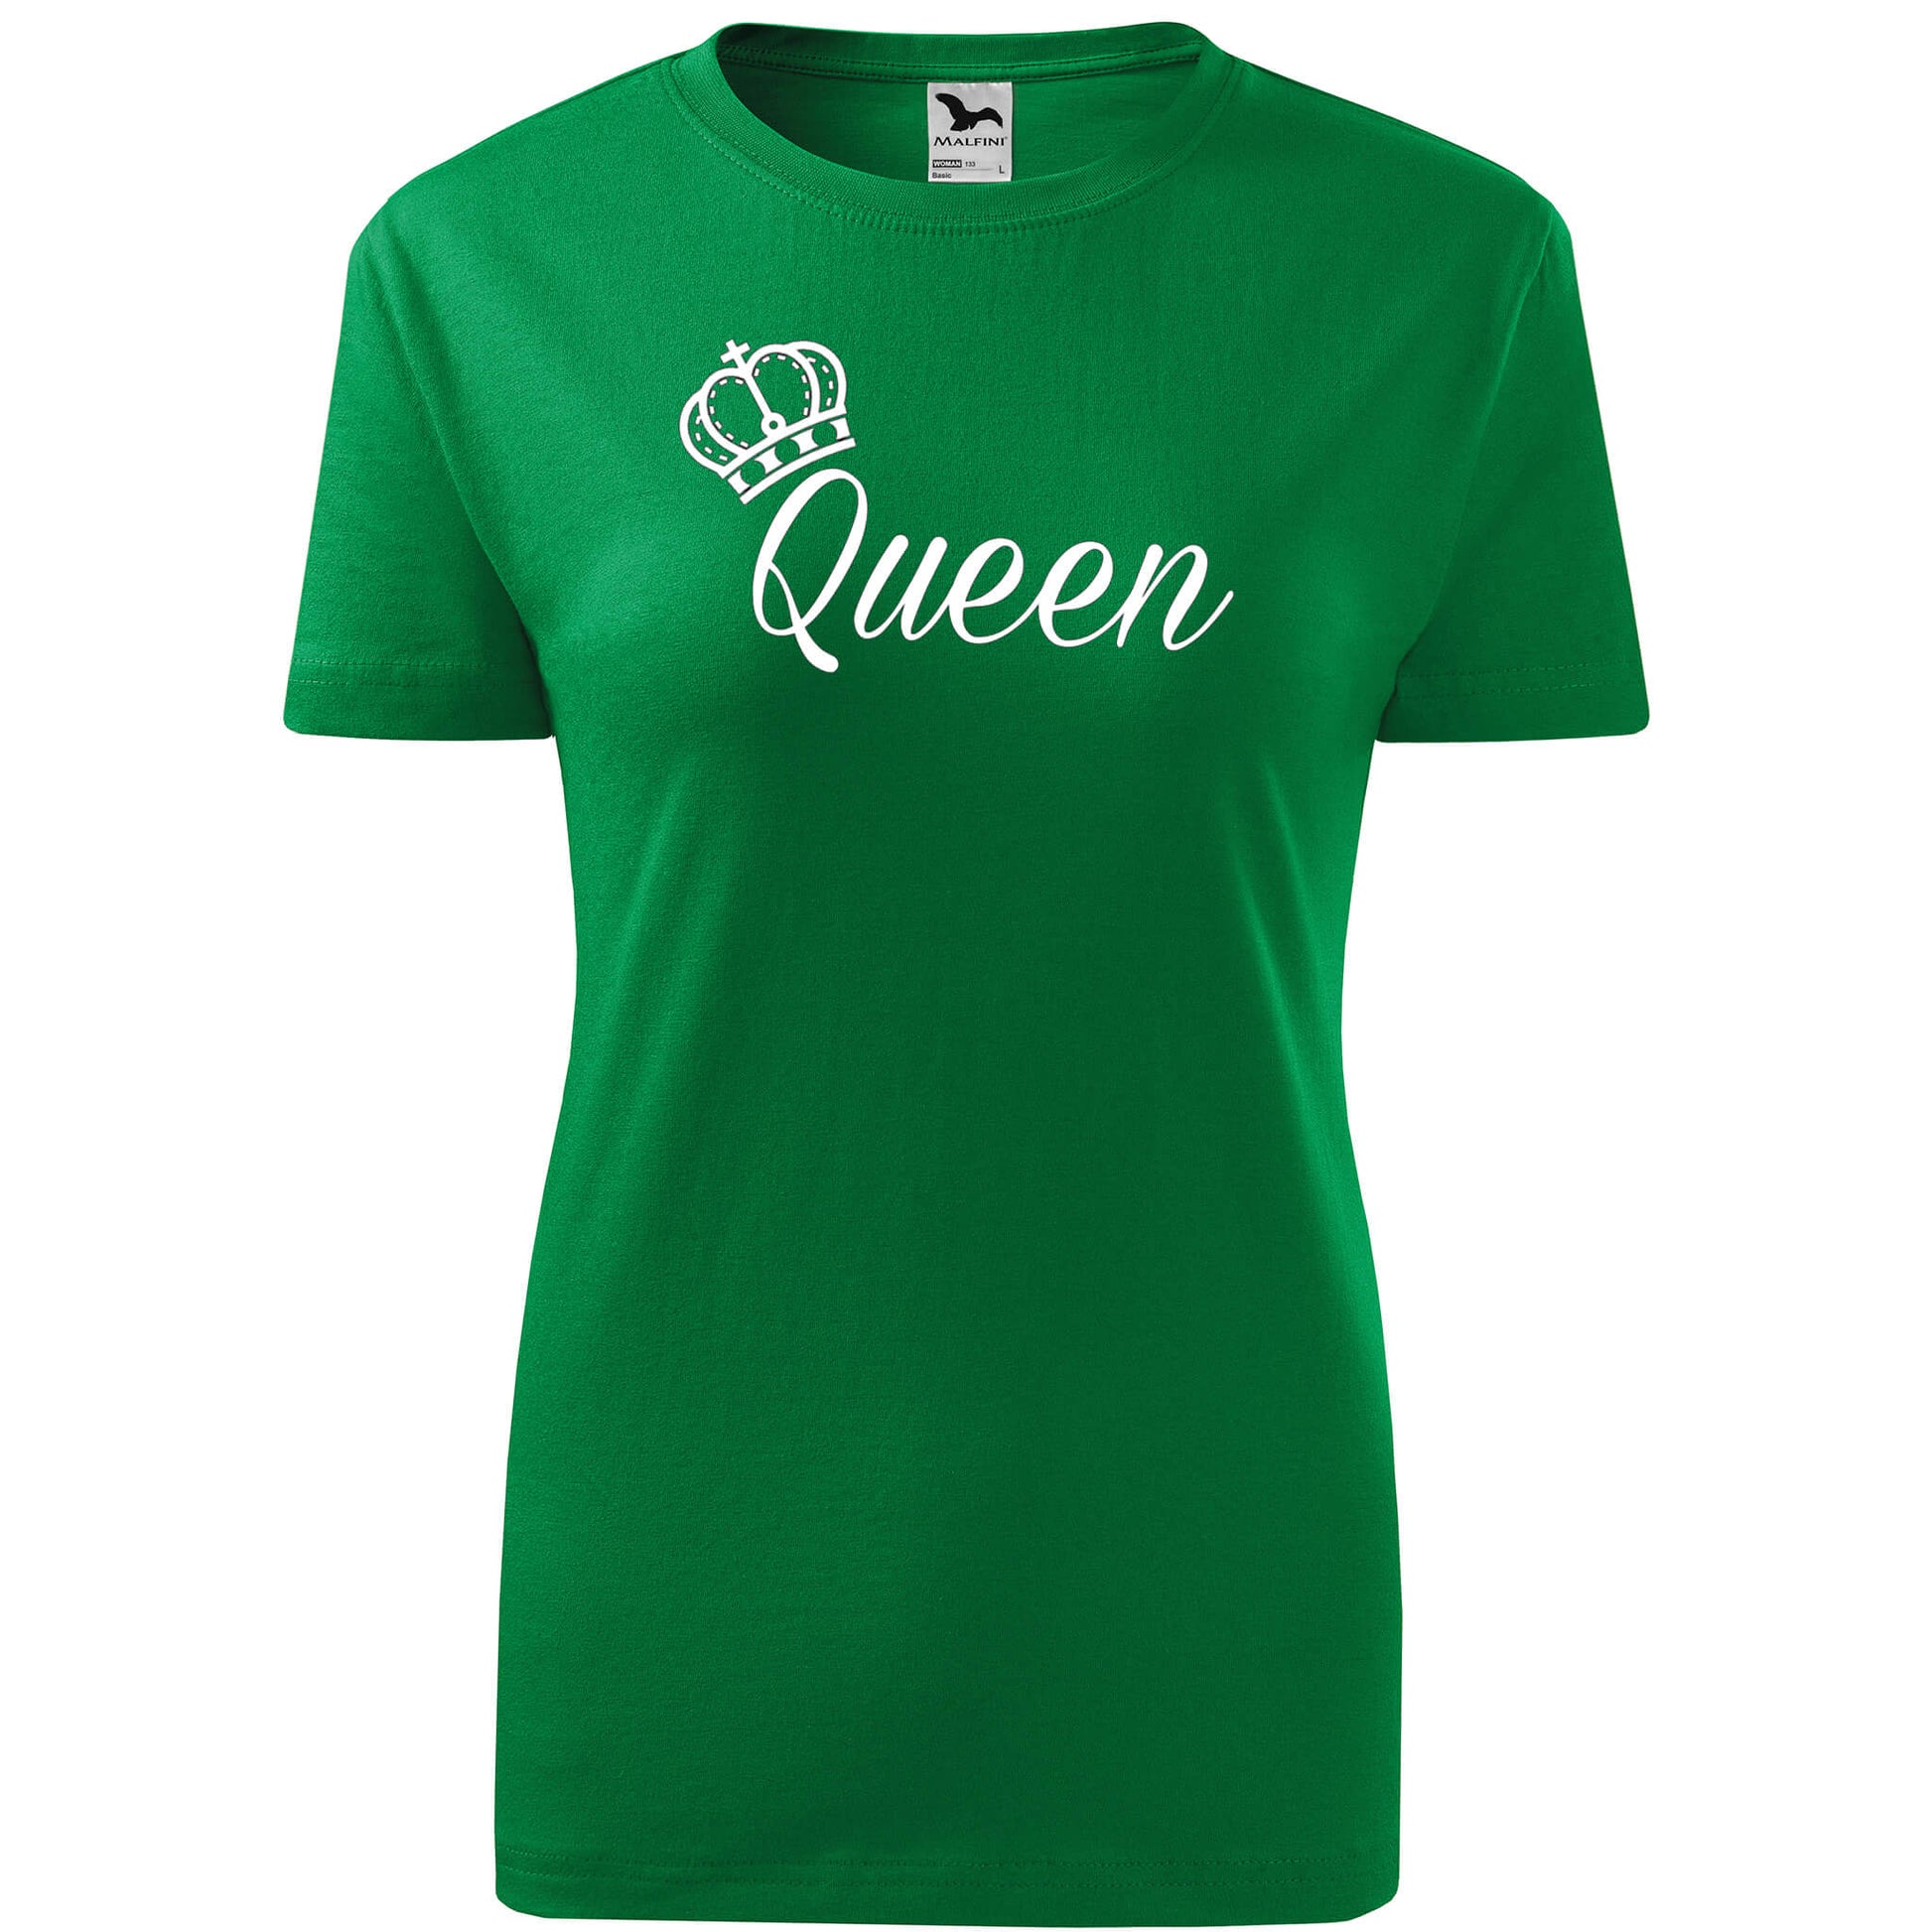 T-shirt - Queen - rvdesignprint